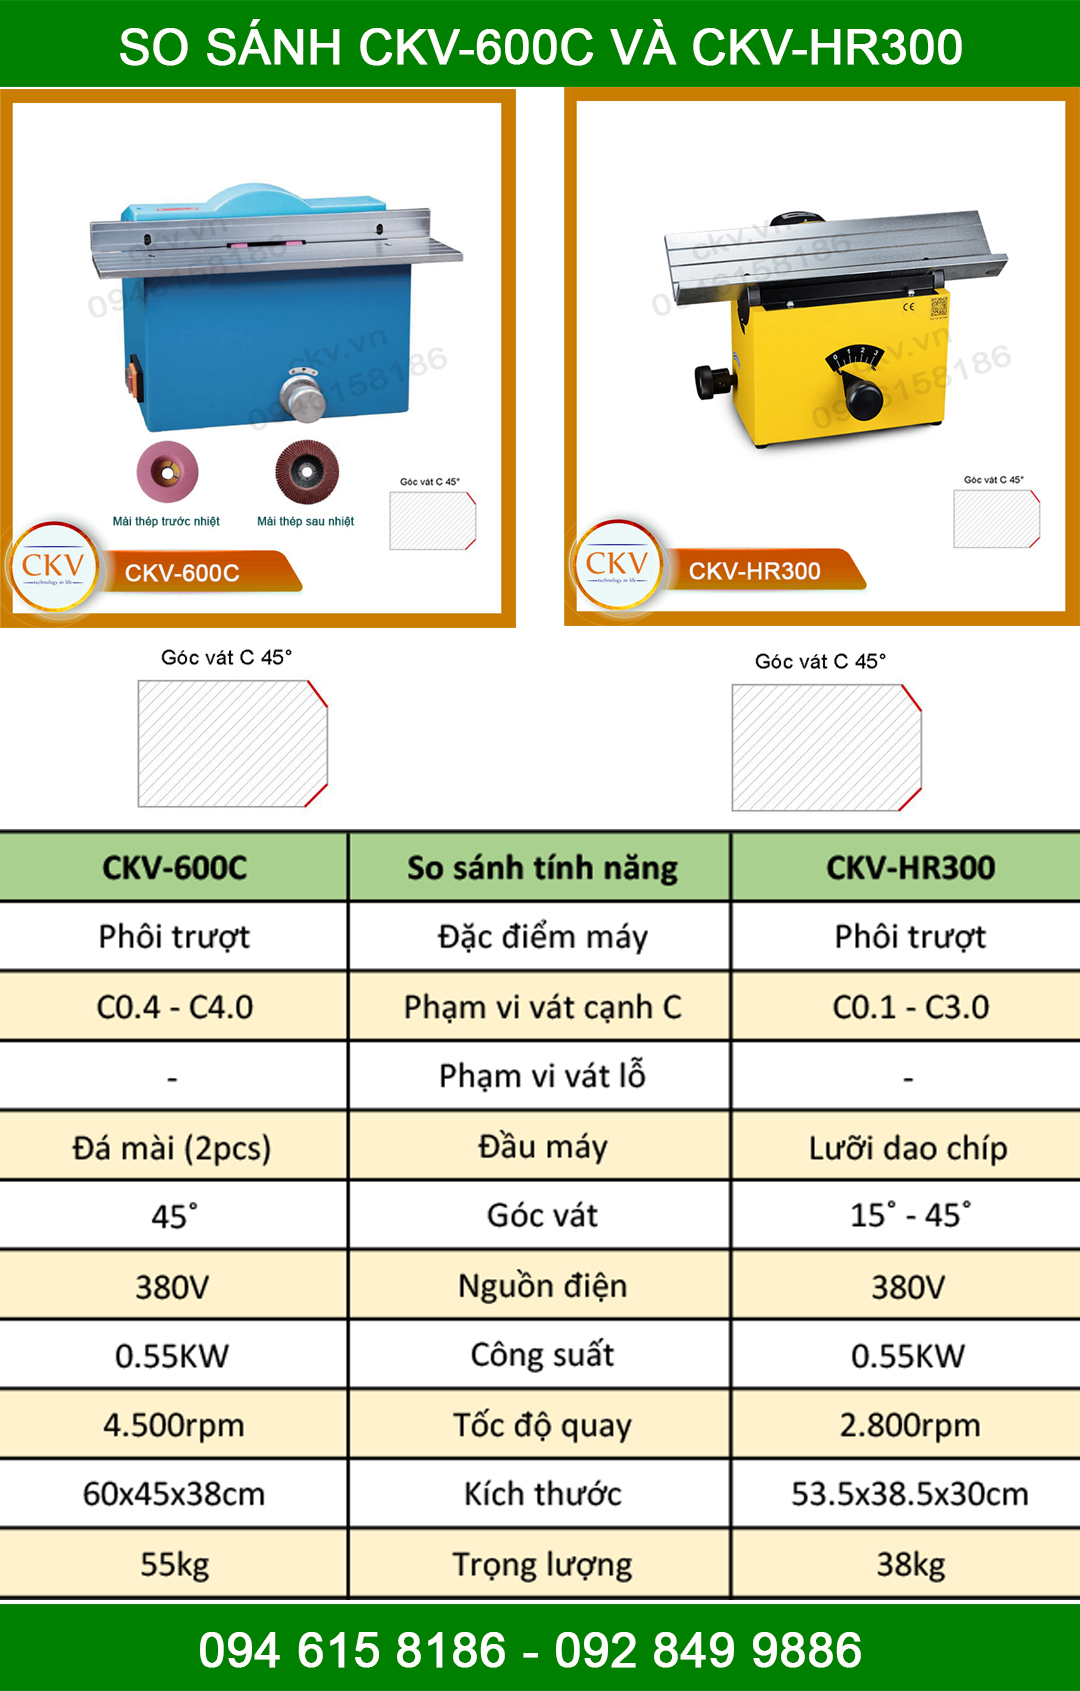 So sánh CKV-600C với CKV-HR300